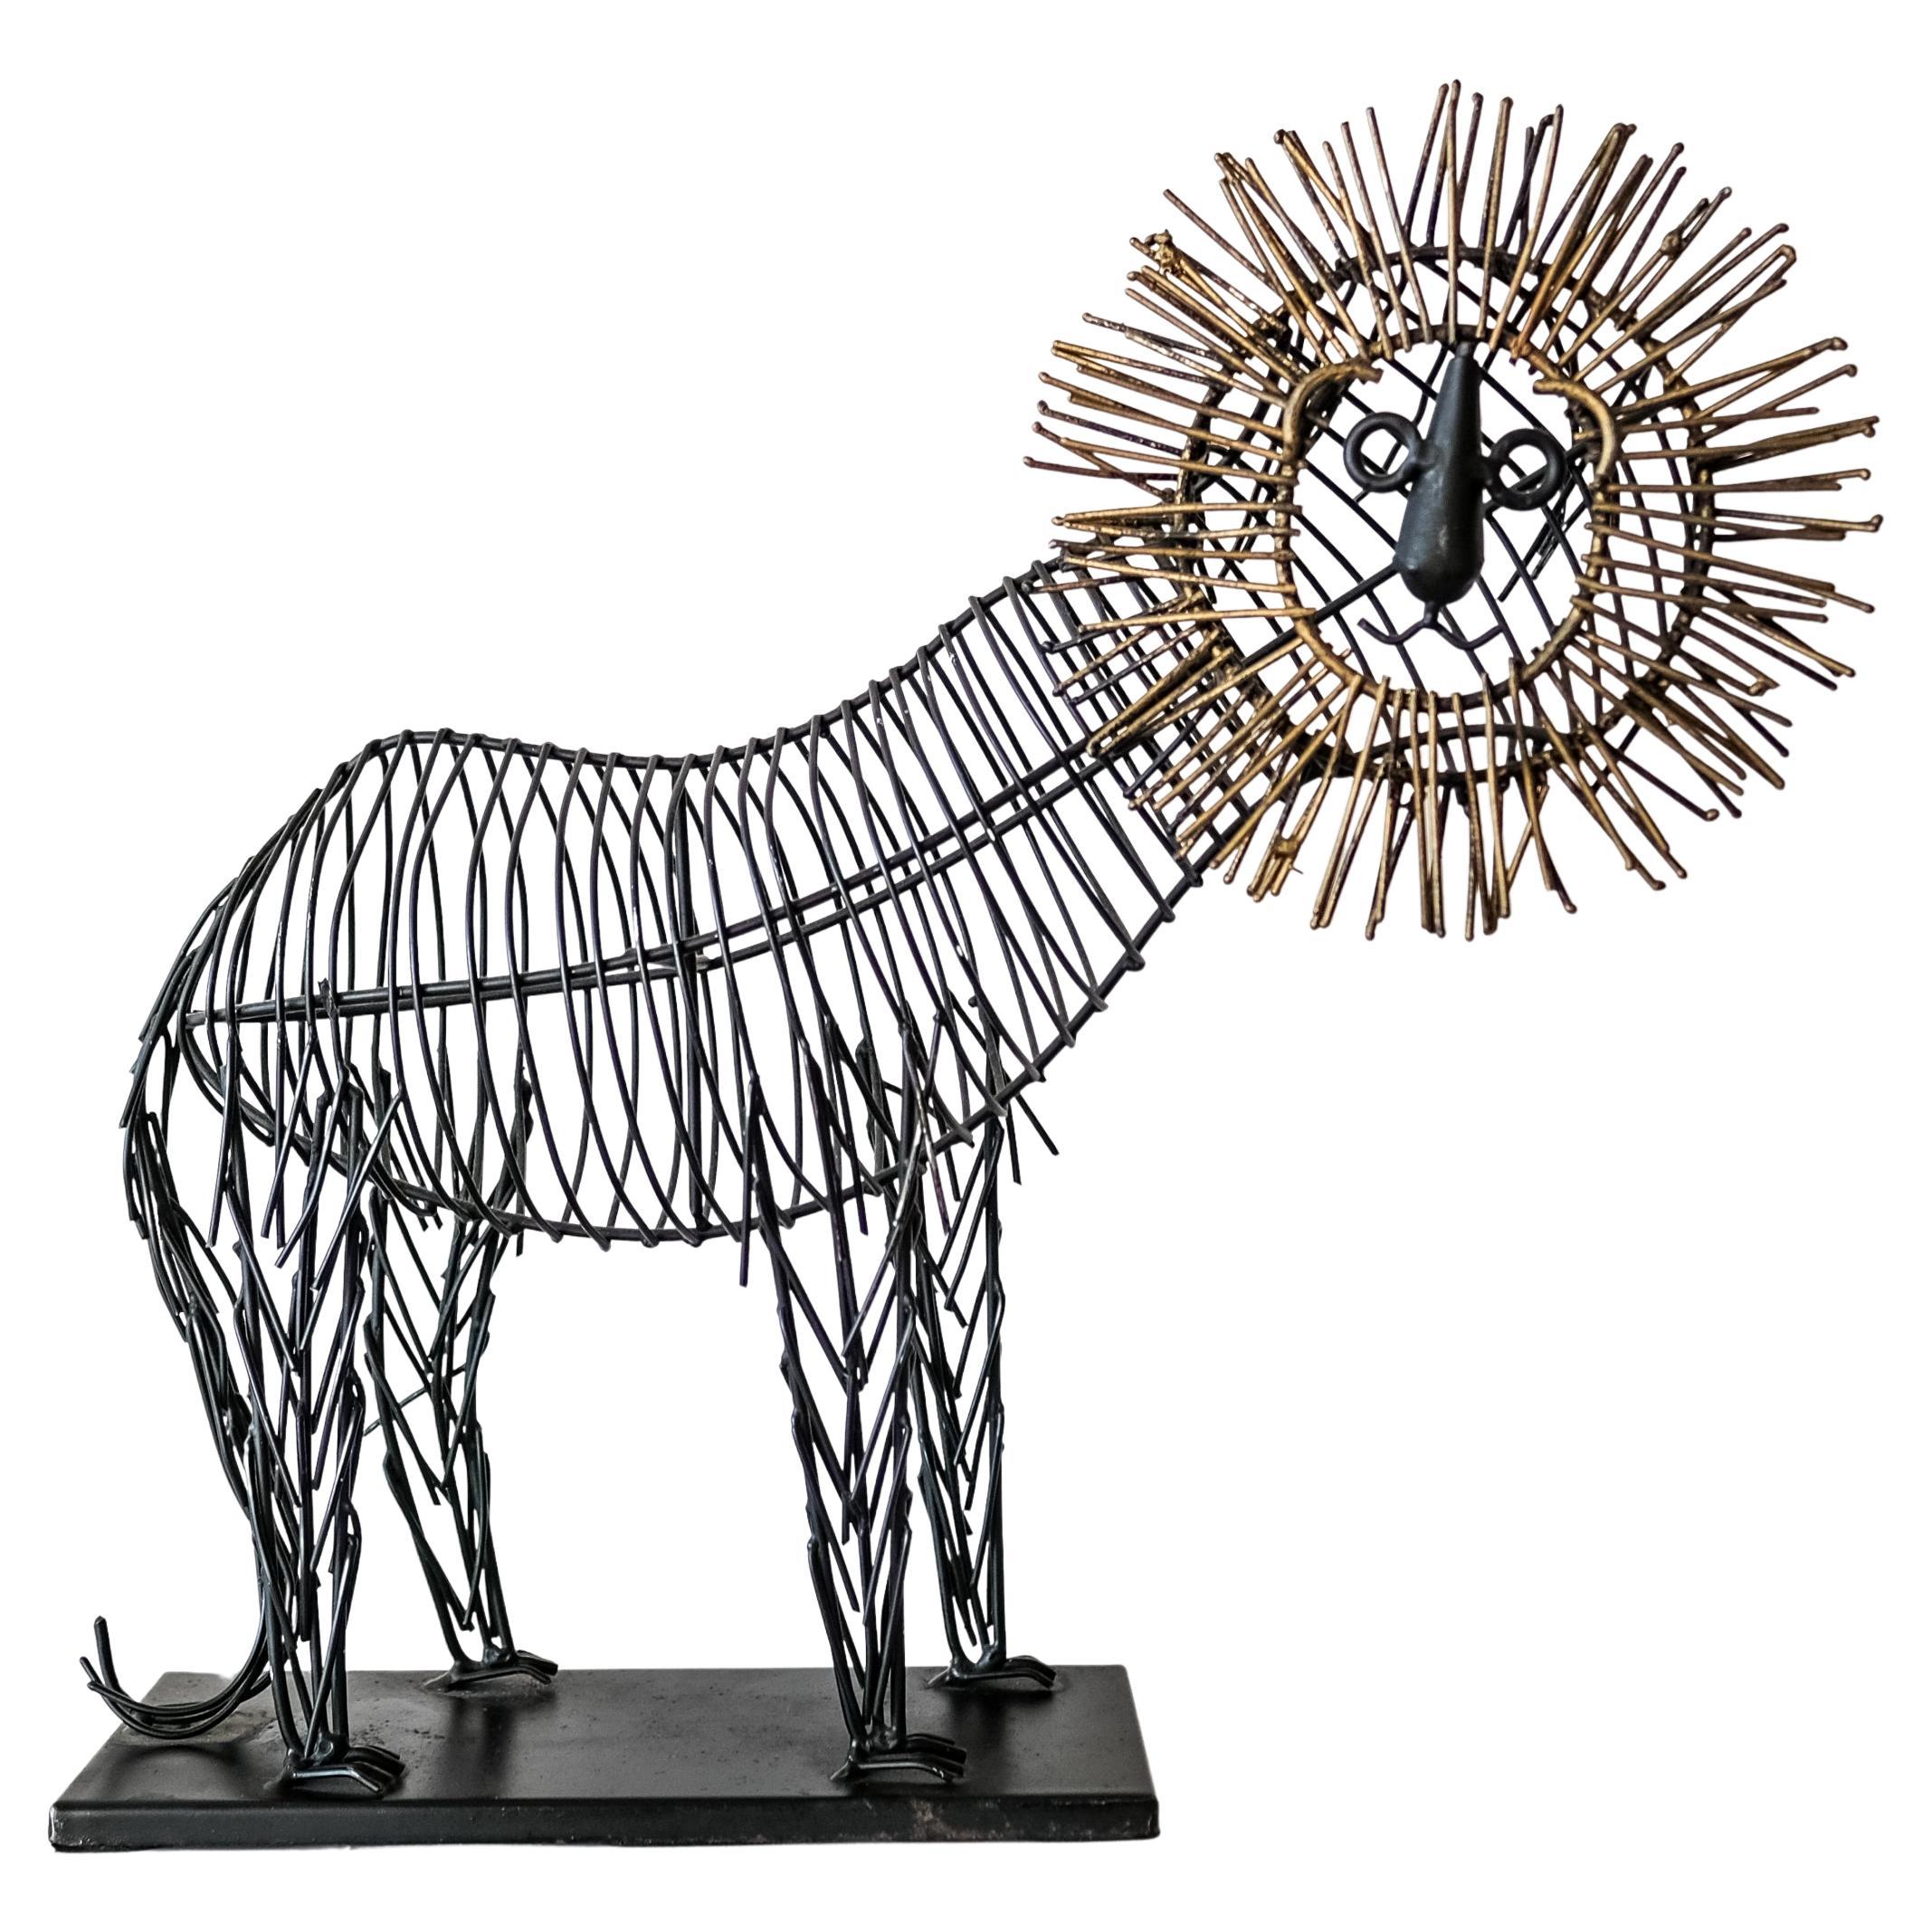 Skurrile Löwen-Skulptur aus Metalldraht im Stil von C. Jere